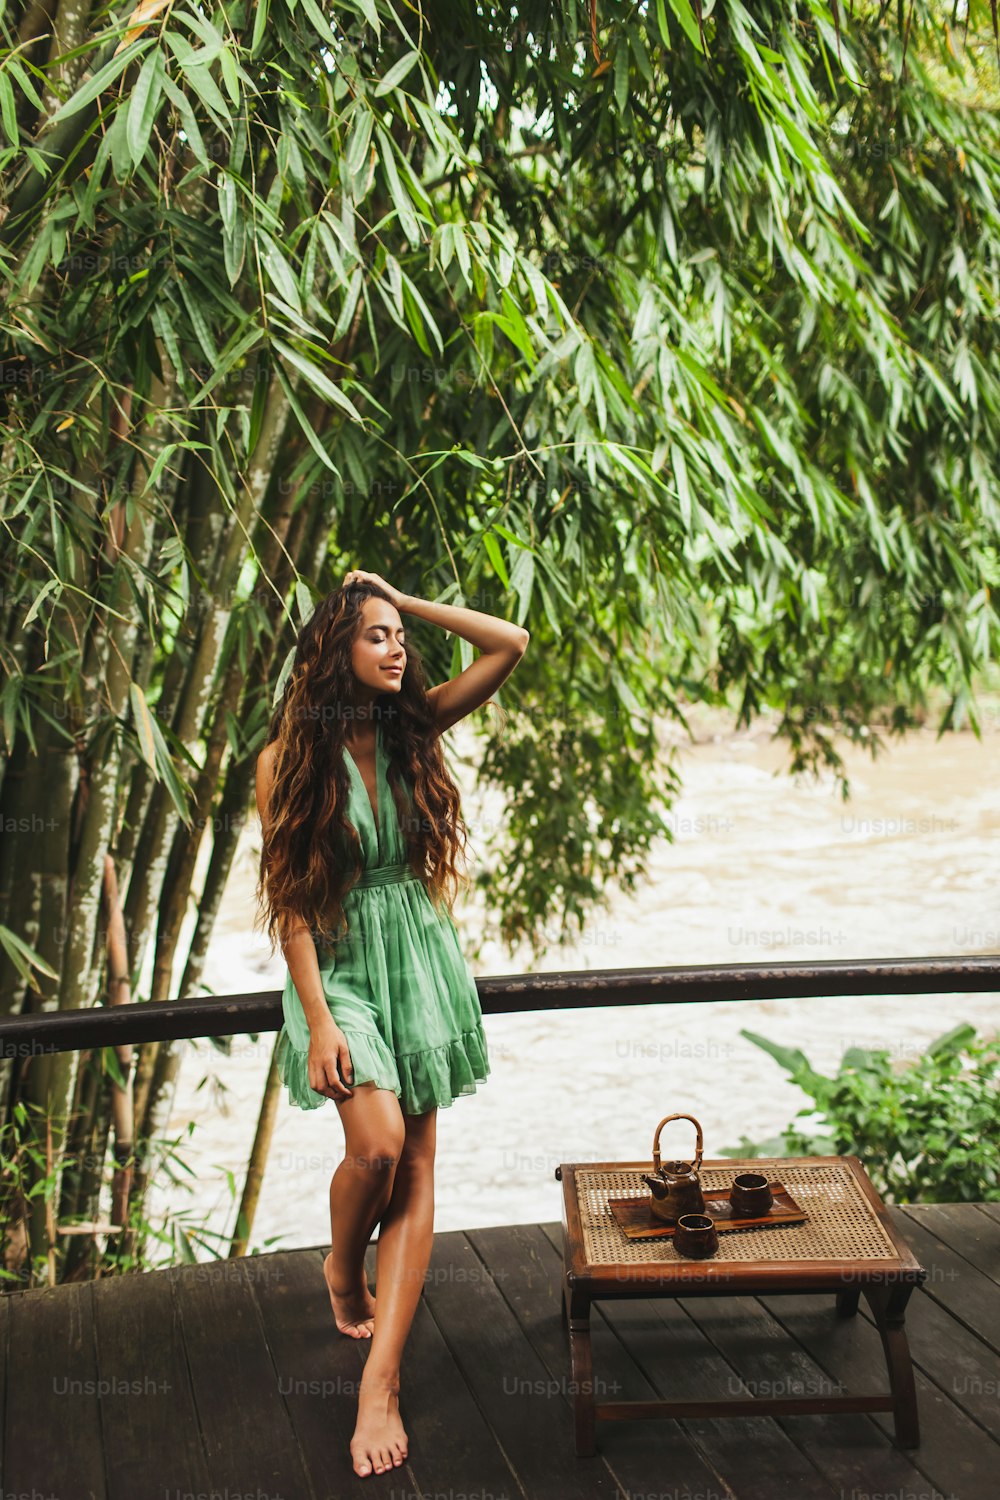 Schöne junge lockige authentische Frau im grünen Kleid trinkt gesunden Tee im Freien mit Naturhintergrund. Relax-Zeit-Konzept.